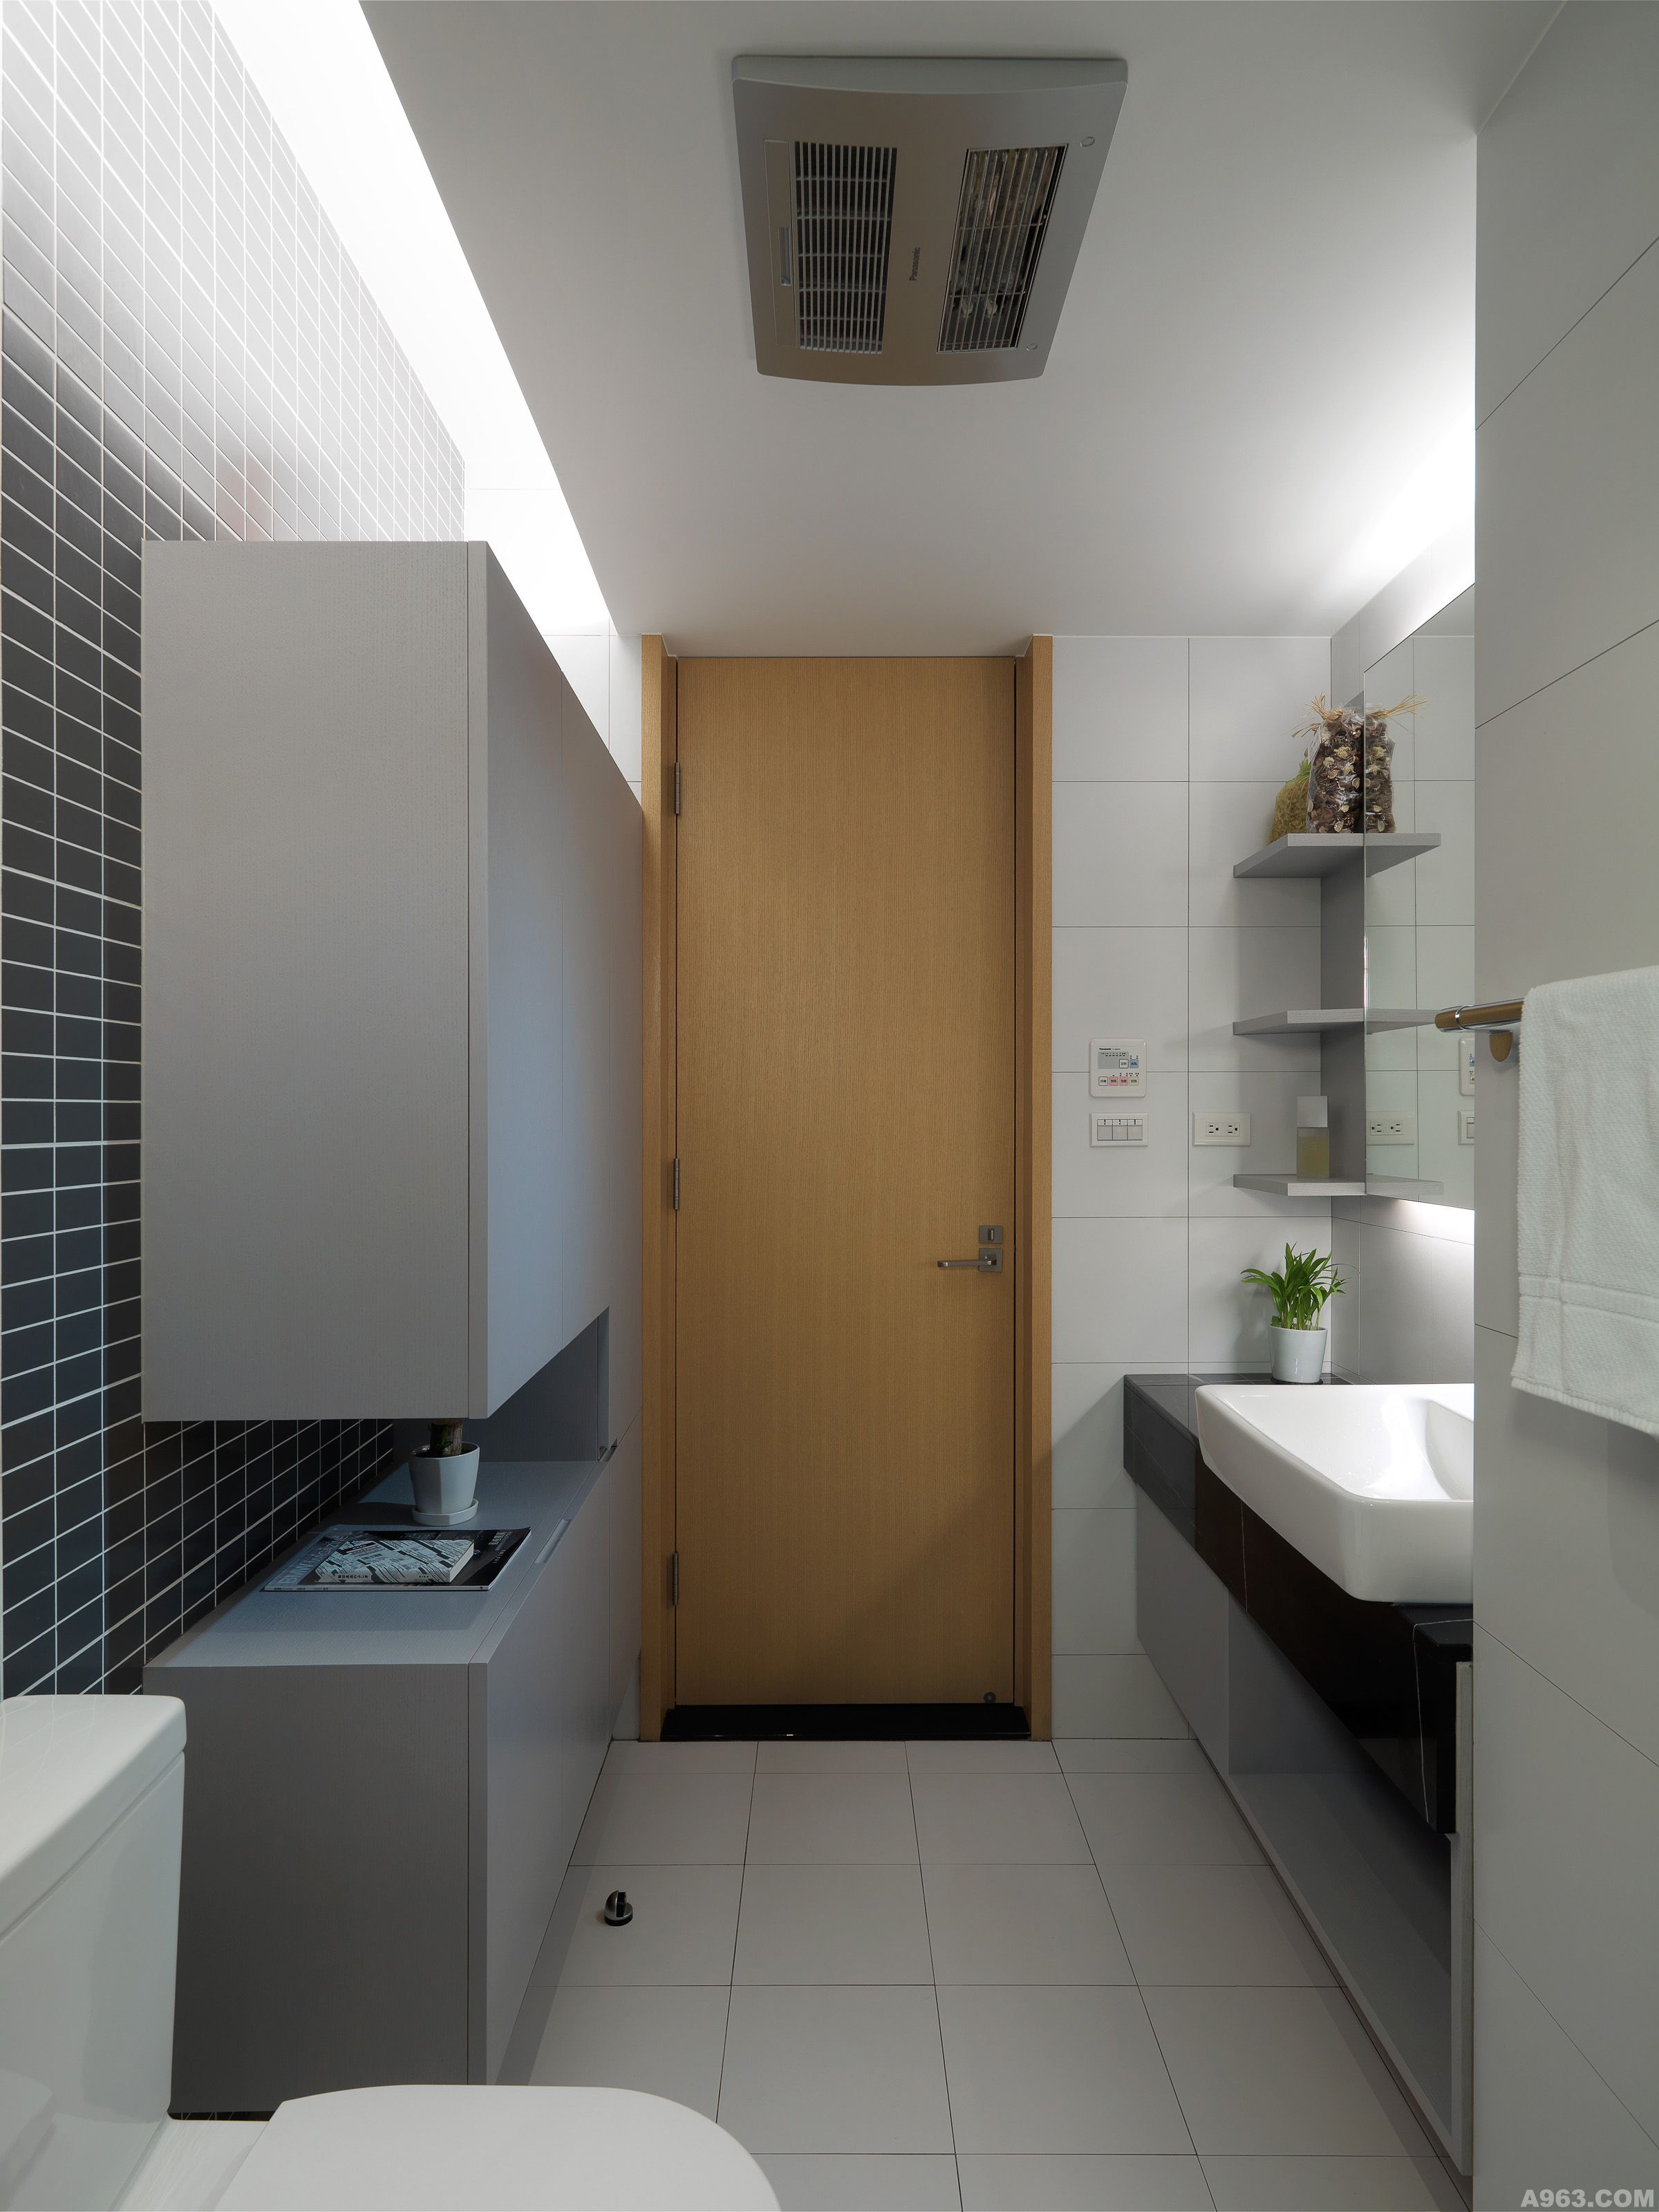 在浴室的處理，設計師採用明亮的白灰色系搭配，讓空間顯得乾淨與清爽